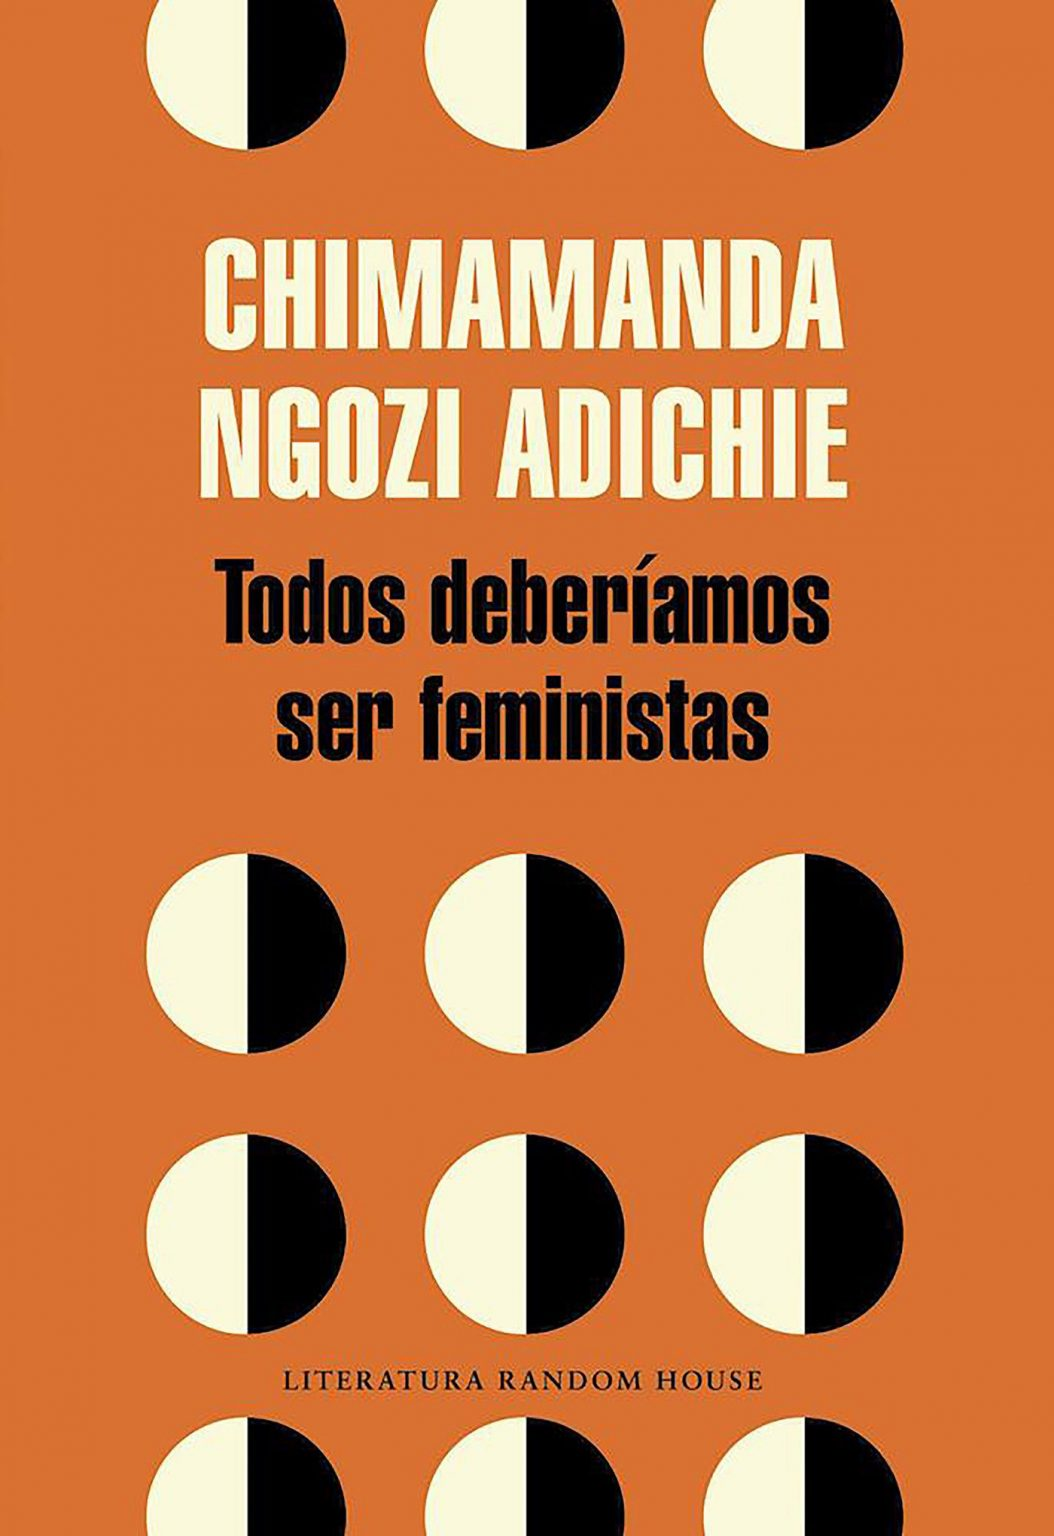 Invitación a la lectura XXXI: Todos deberíamos ser feministas (II) de Chimamanda Ngozi Adichie.